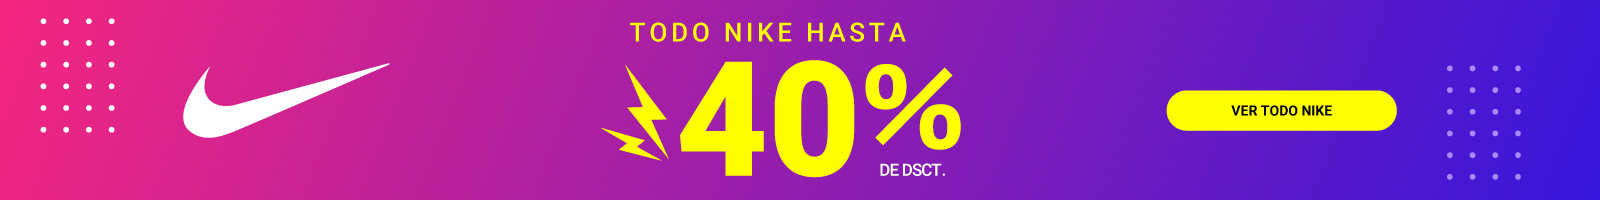 Todo Nike hasta con 40% de descuento